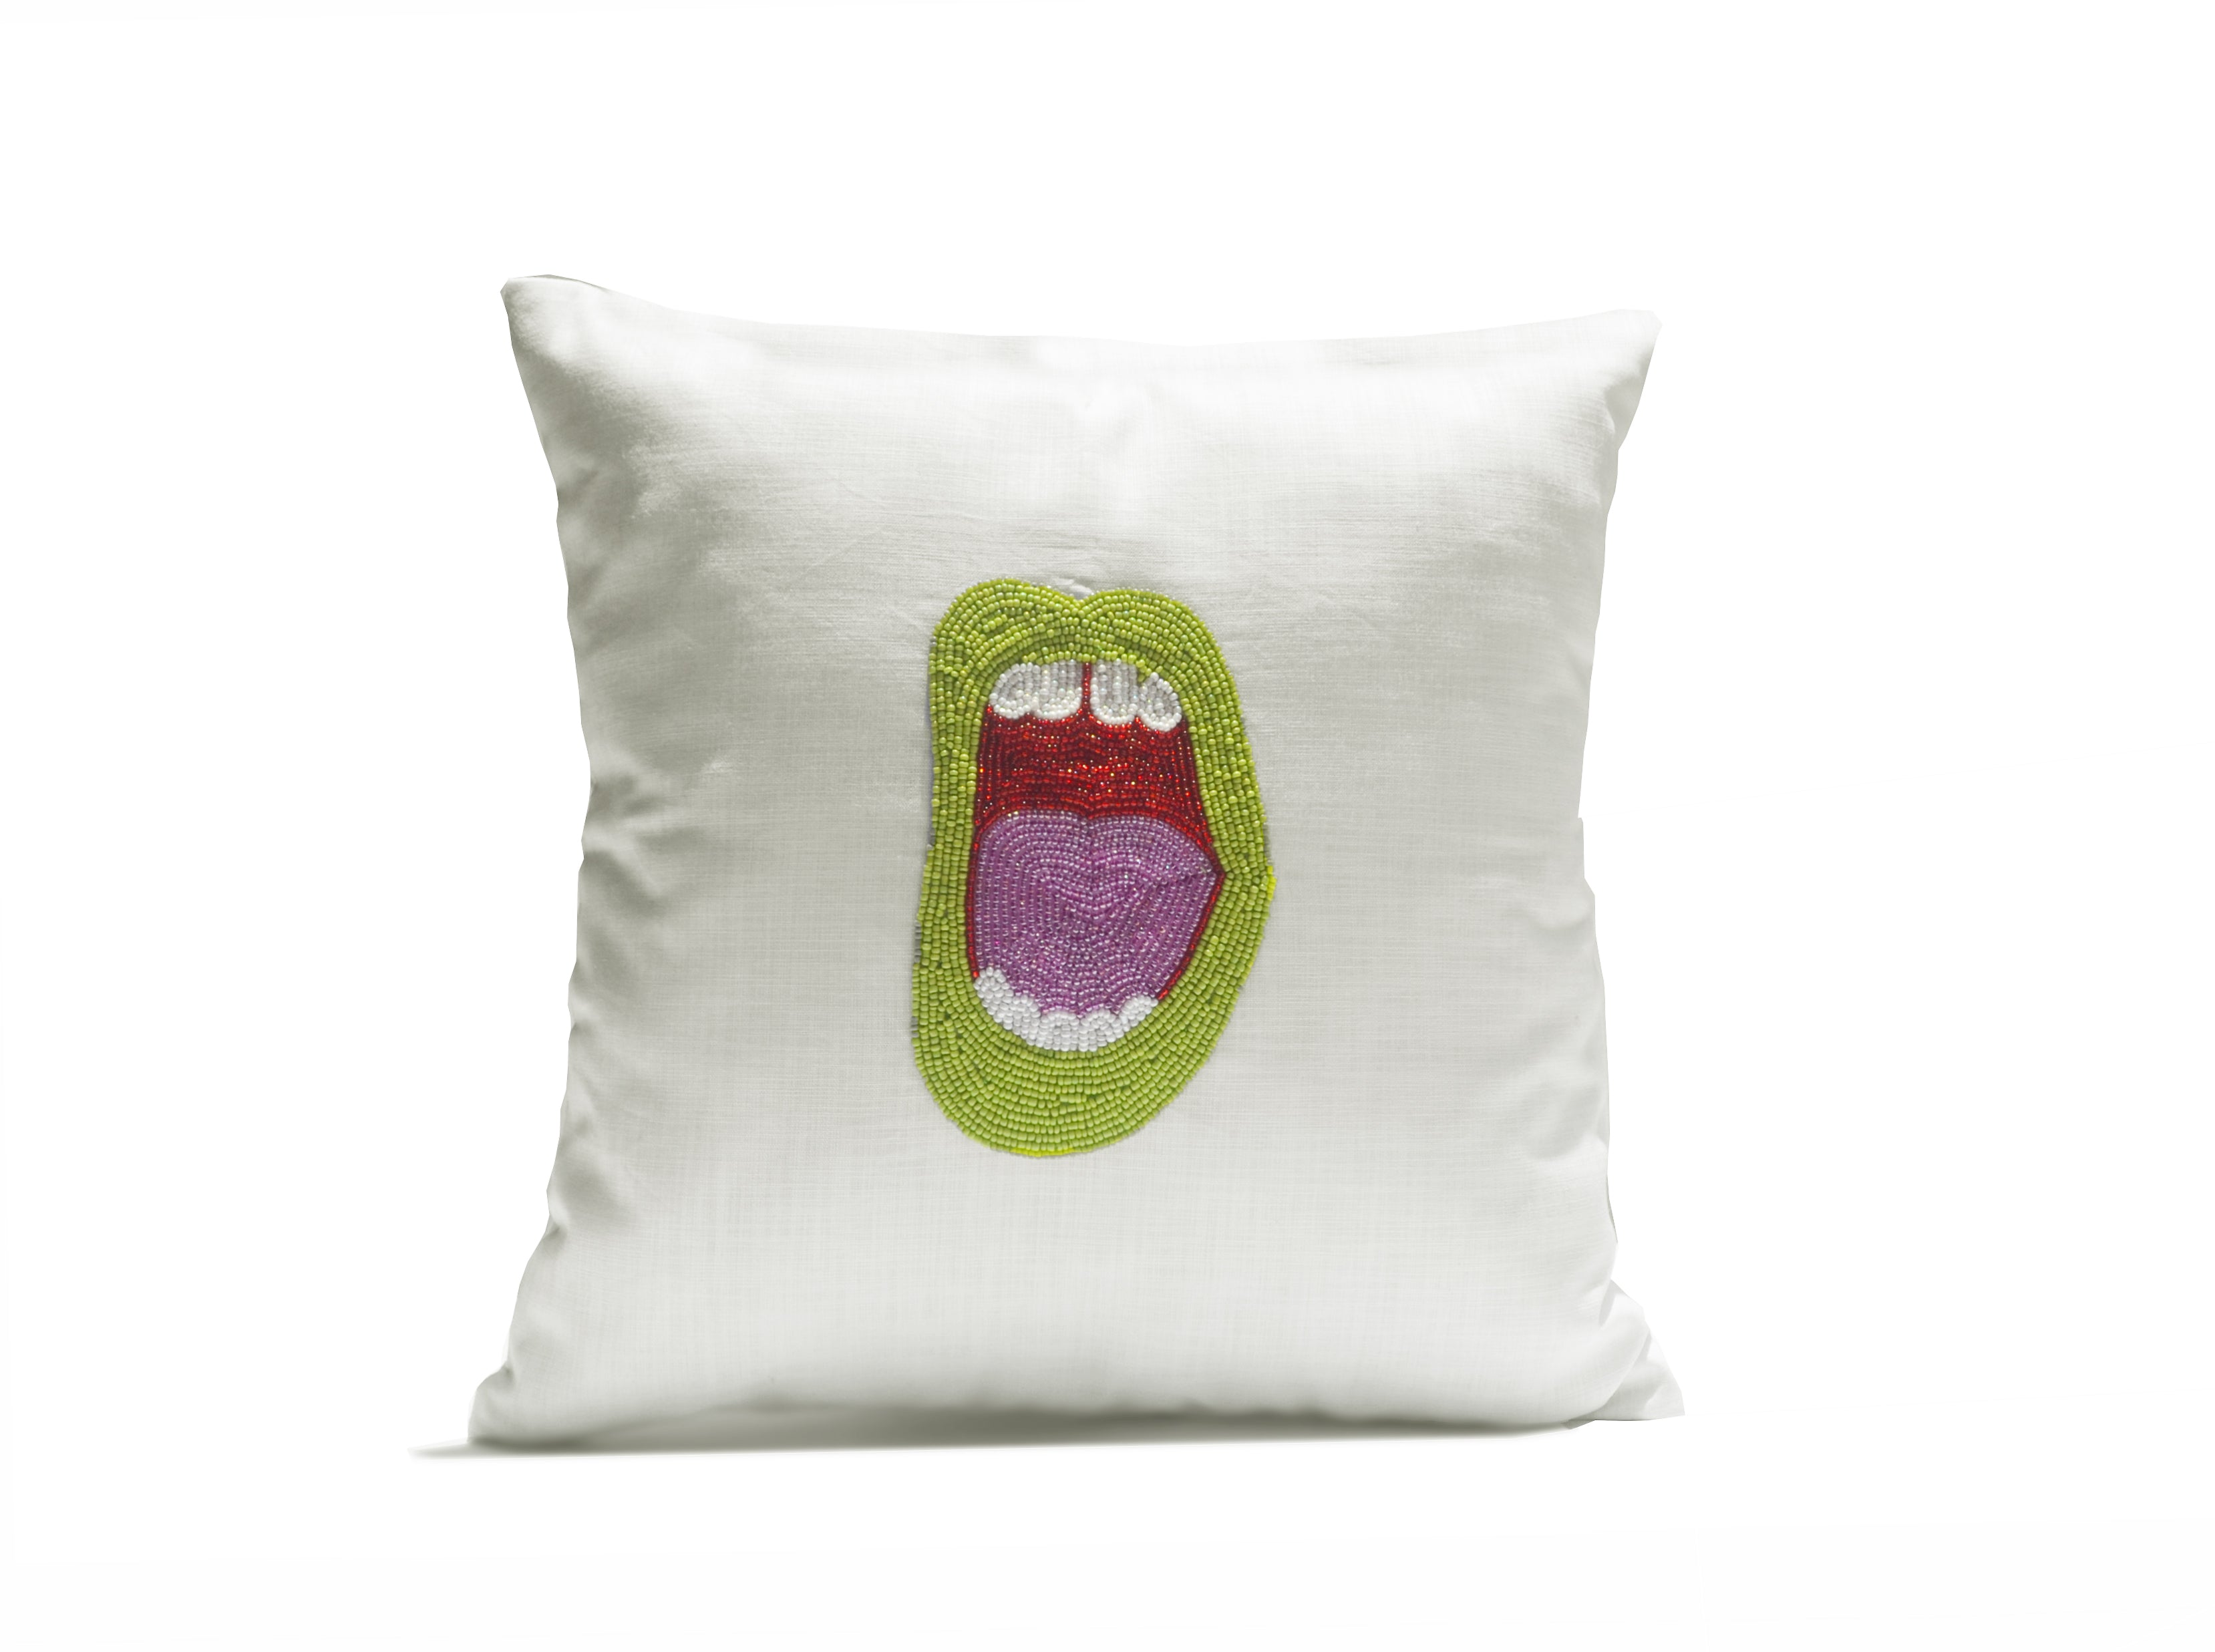 Amore Beaute Green Lips Pop Art Pillow Cover